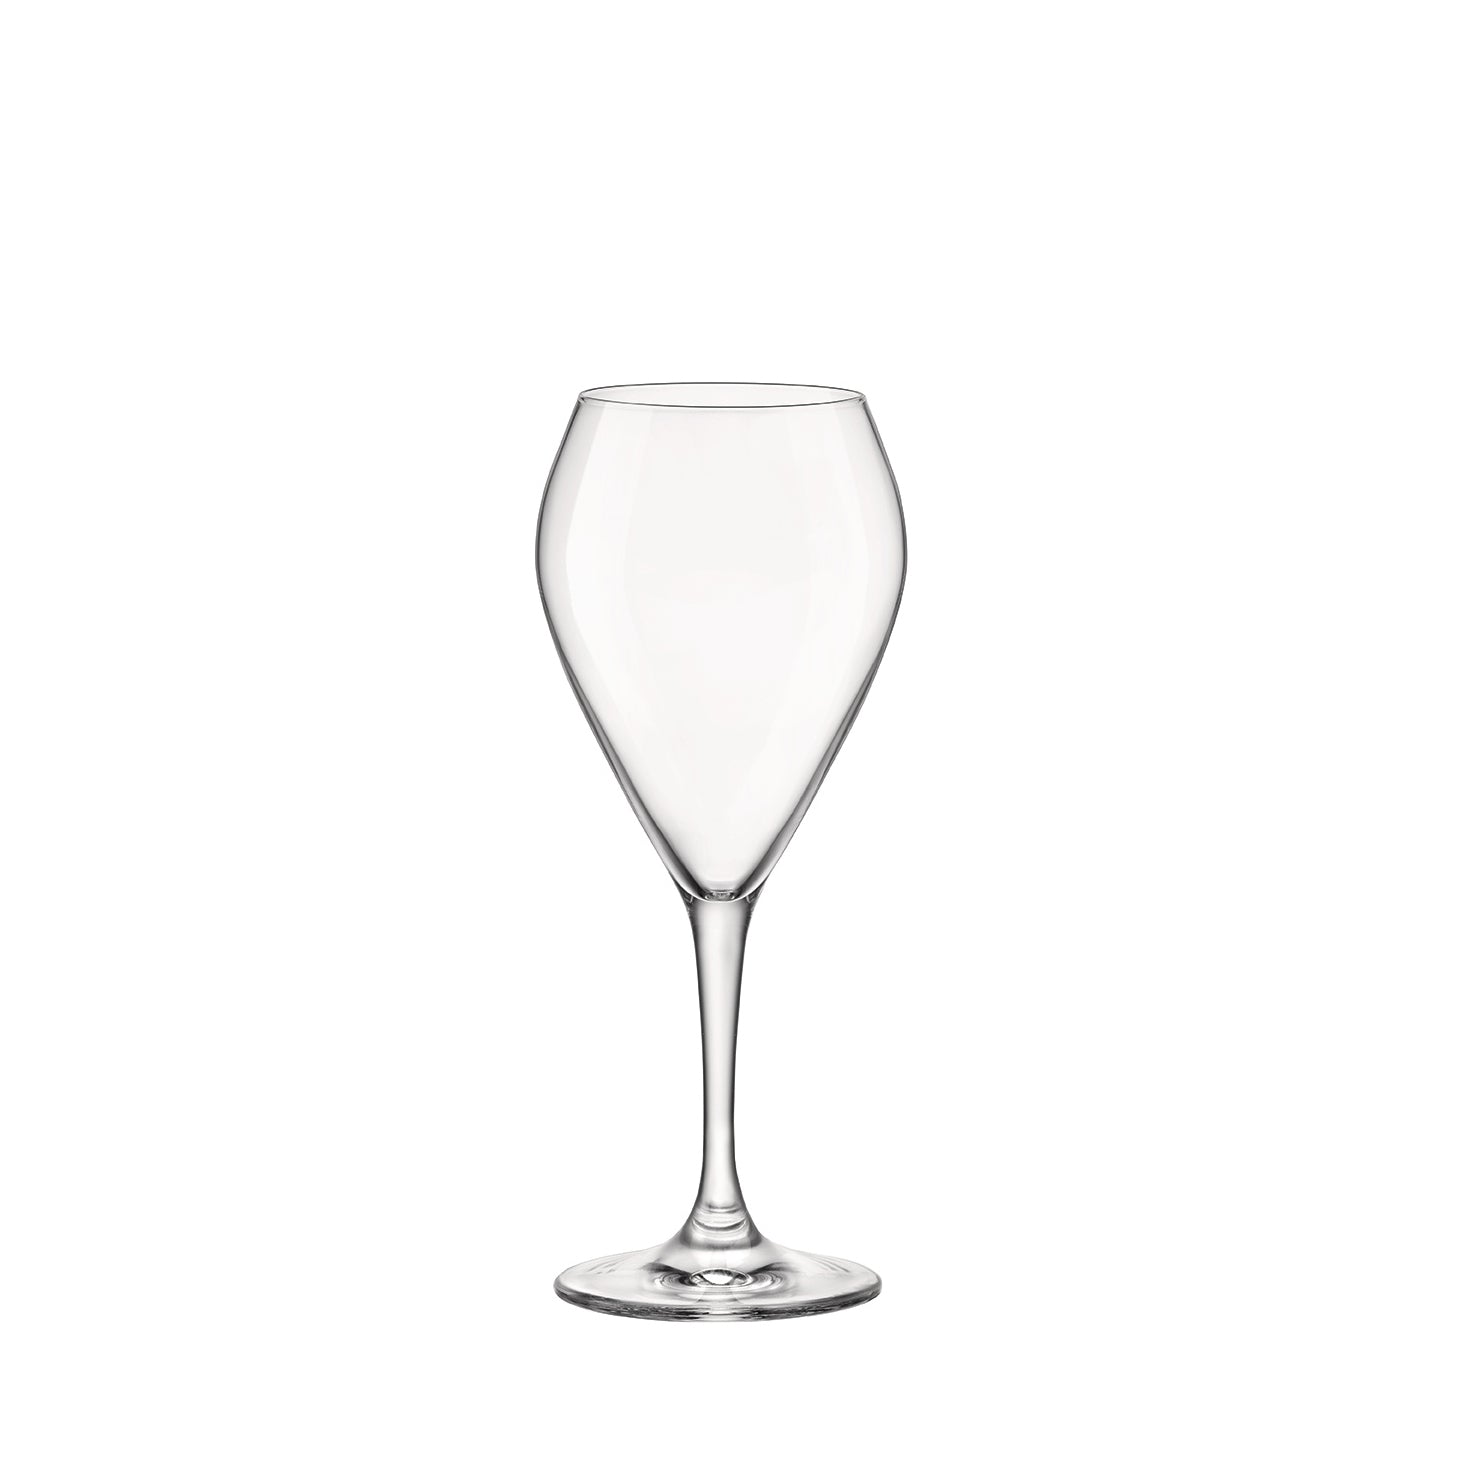 Riserva 13.25 oz. Sparkling Wine Glasses (Set of 6)